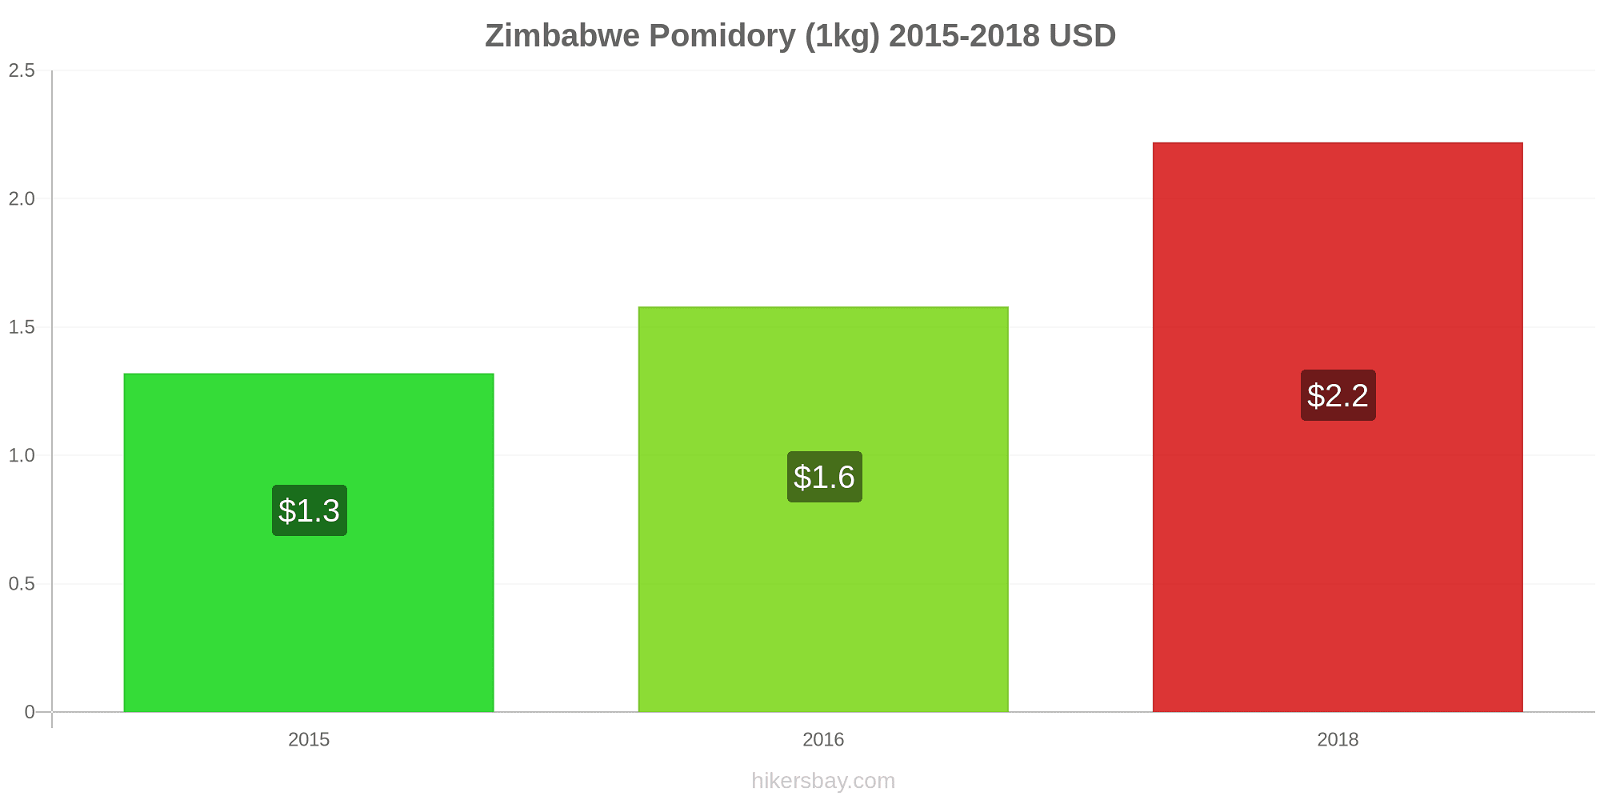 Zimbabwe zmiany cen Pomidory (1kg) hikersbay.com